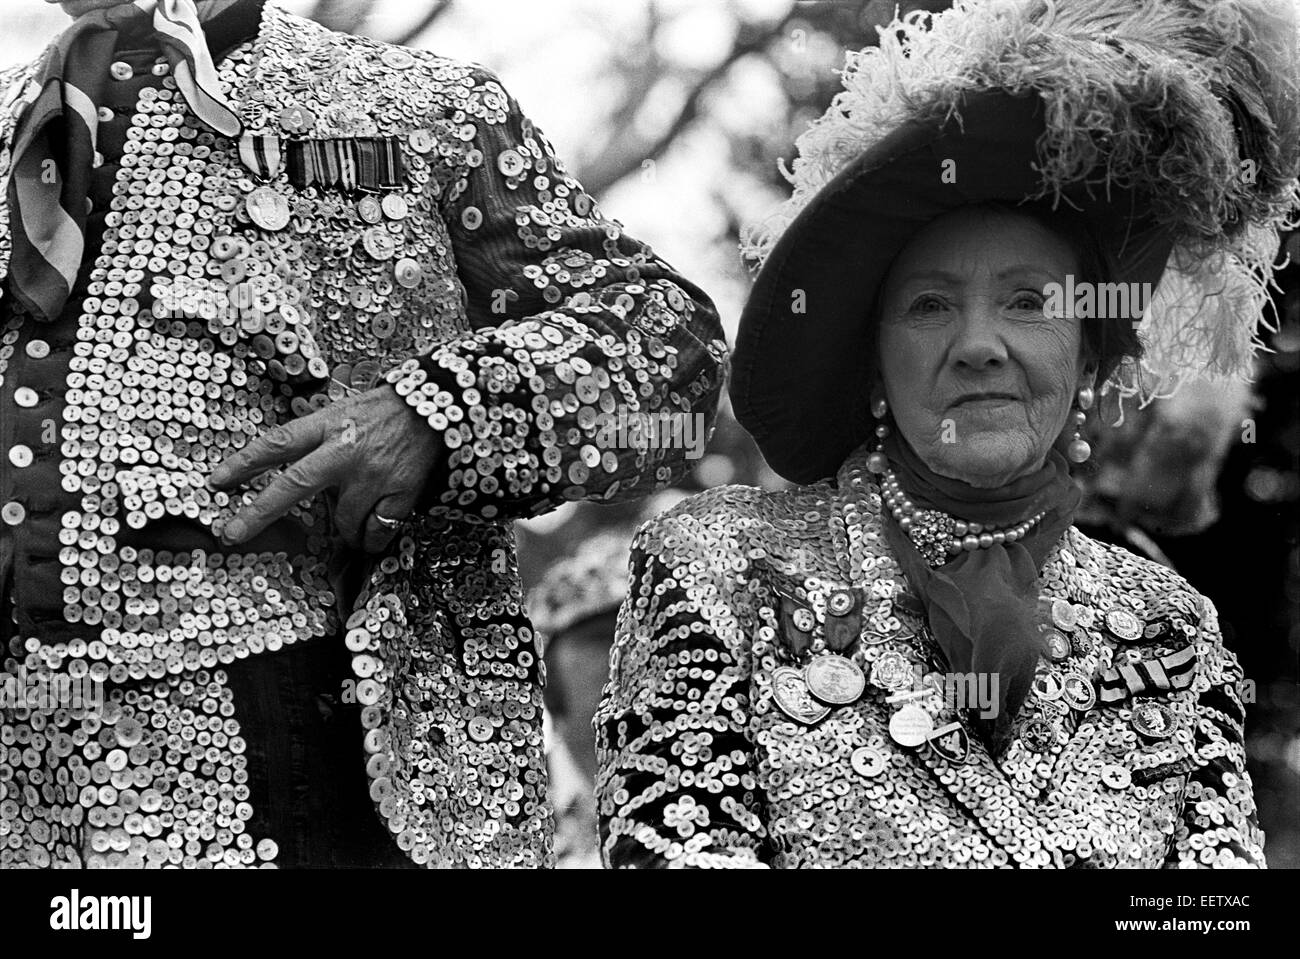 Pearly Kings and Queens prenant part à un événement de Londres dans Battersea Park en 1976 Banque D'Images